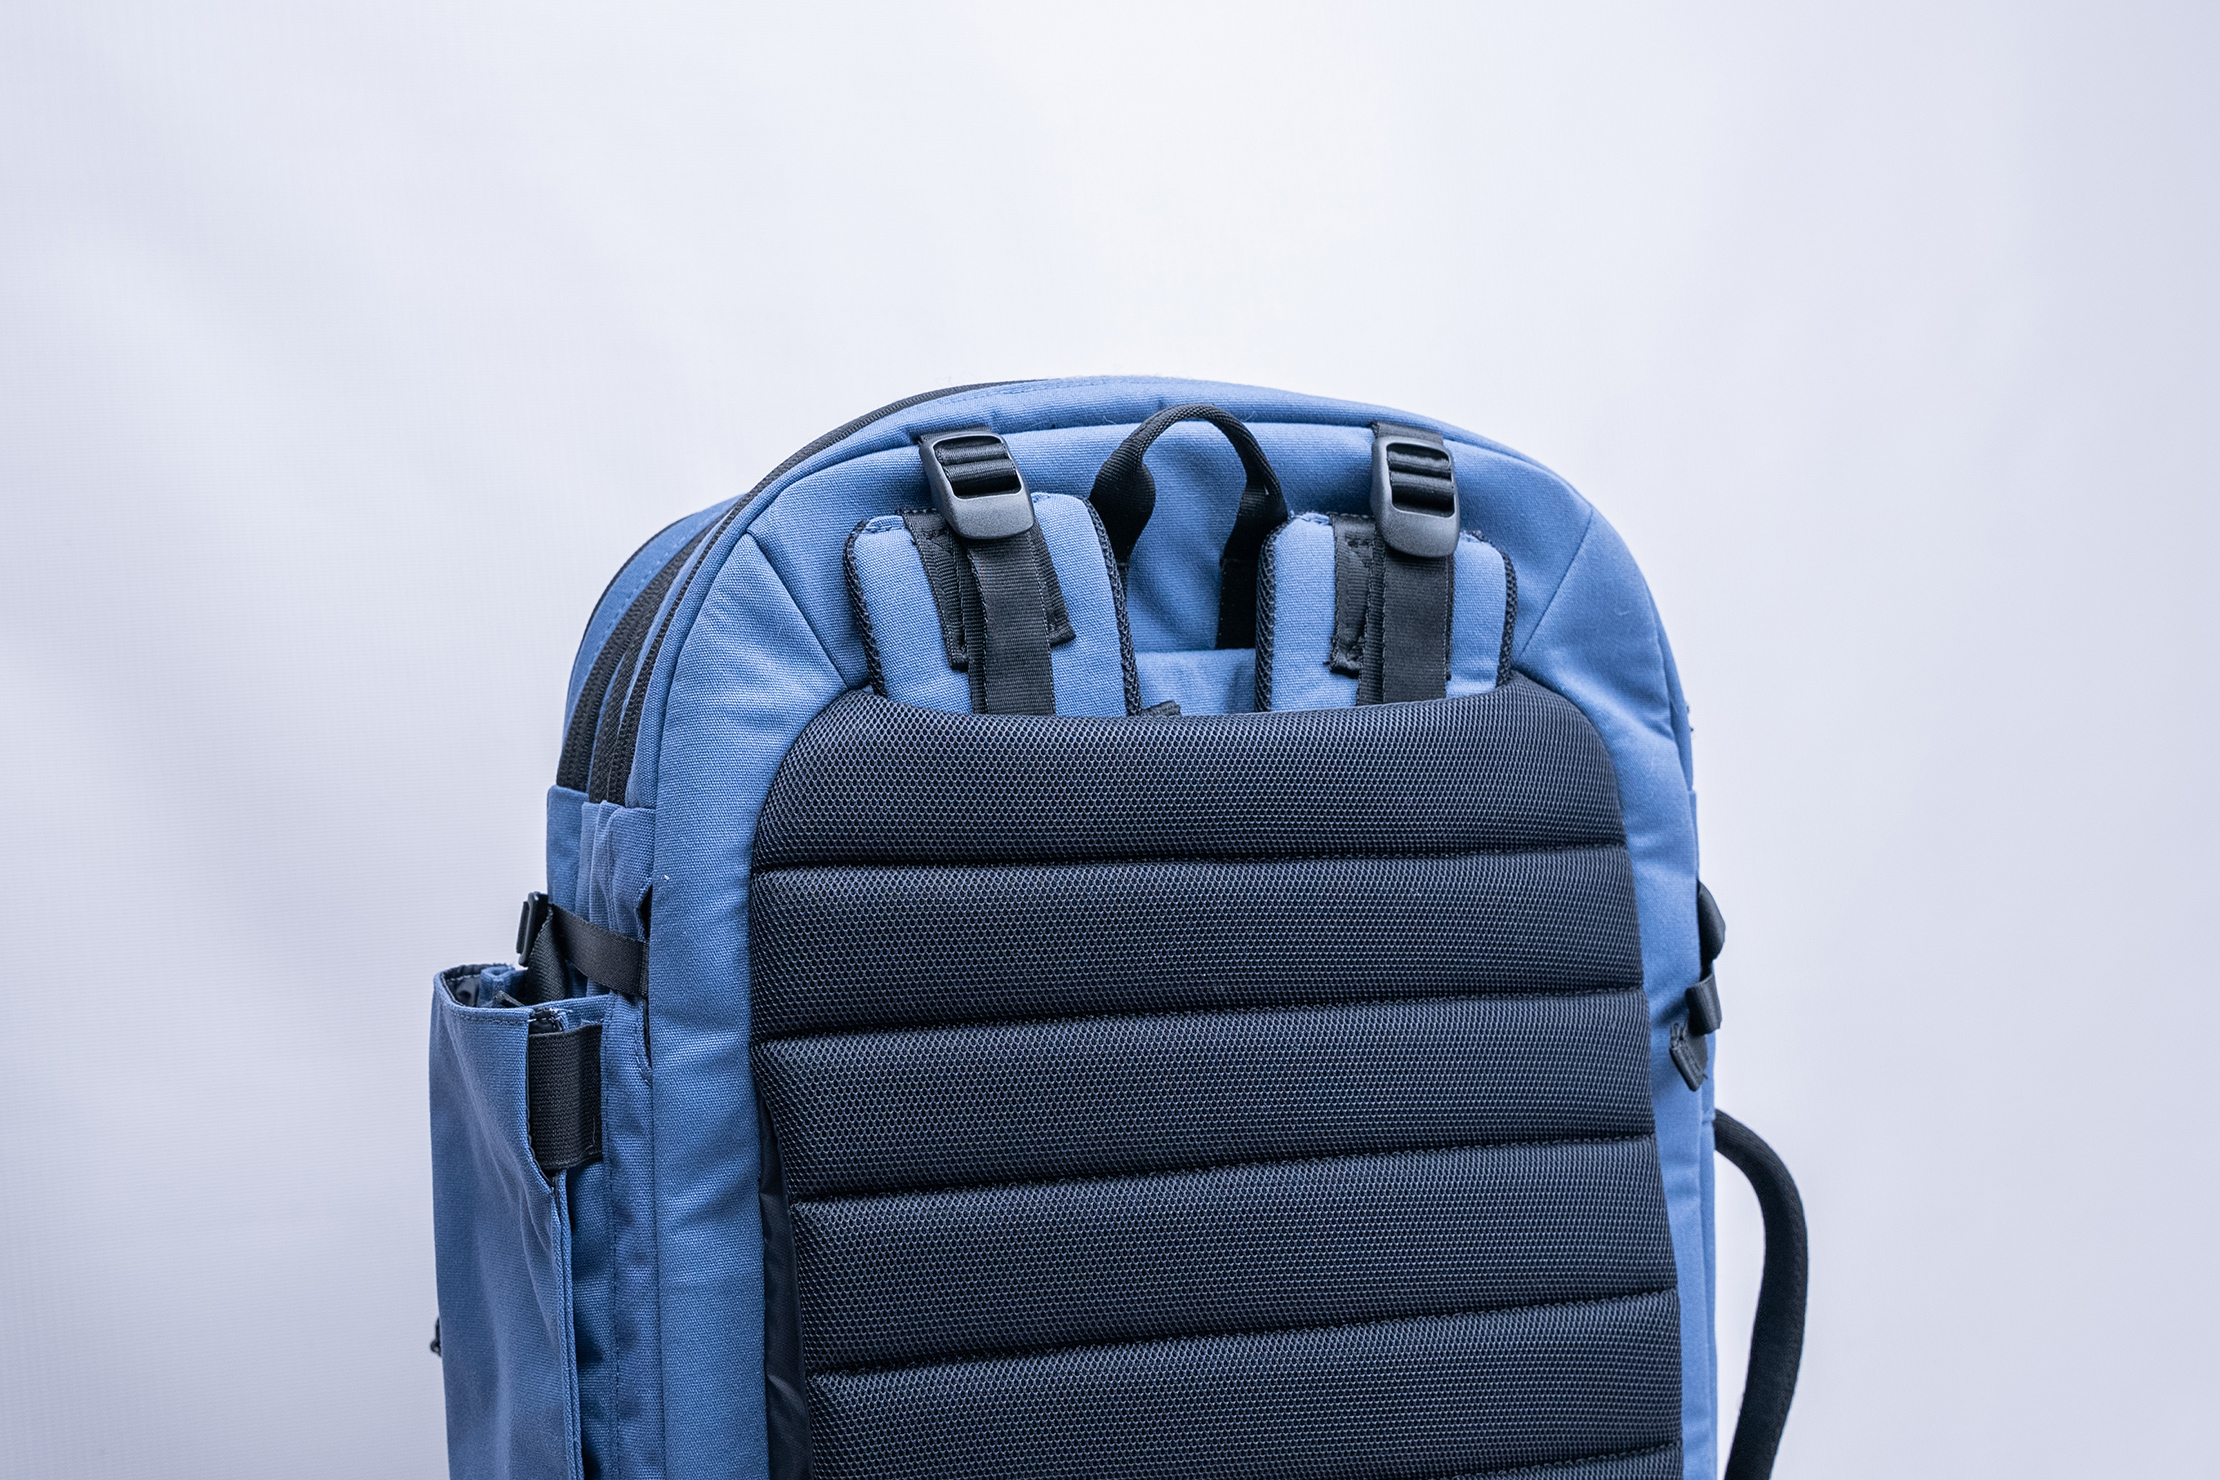 Pakt 16 Travel Backpack V2 45L, Black